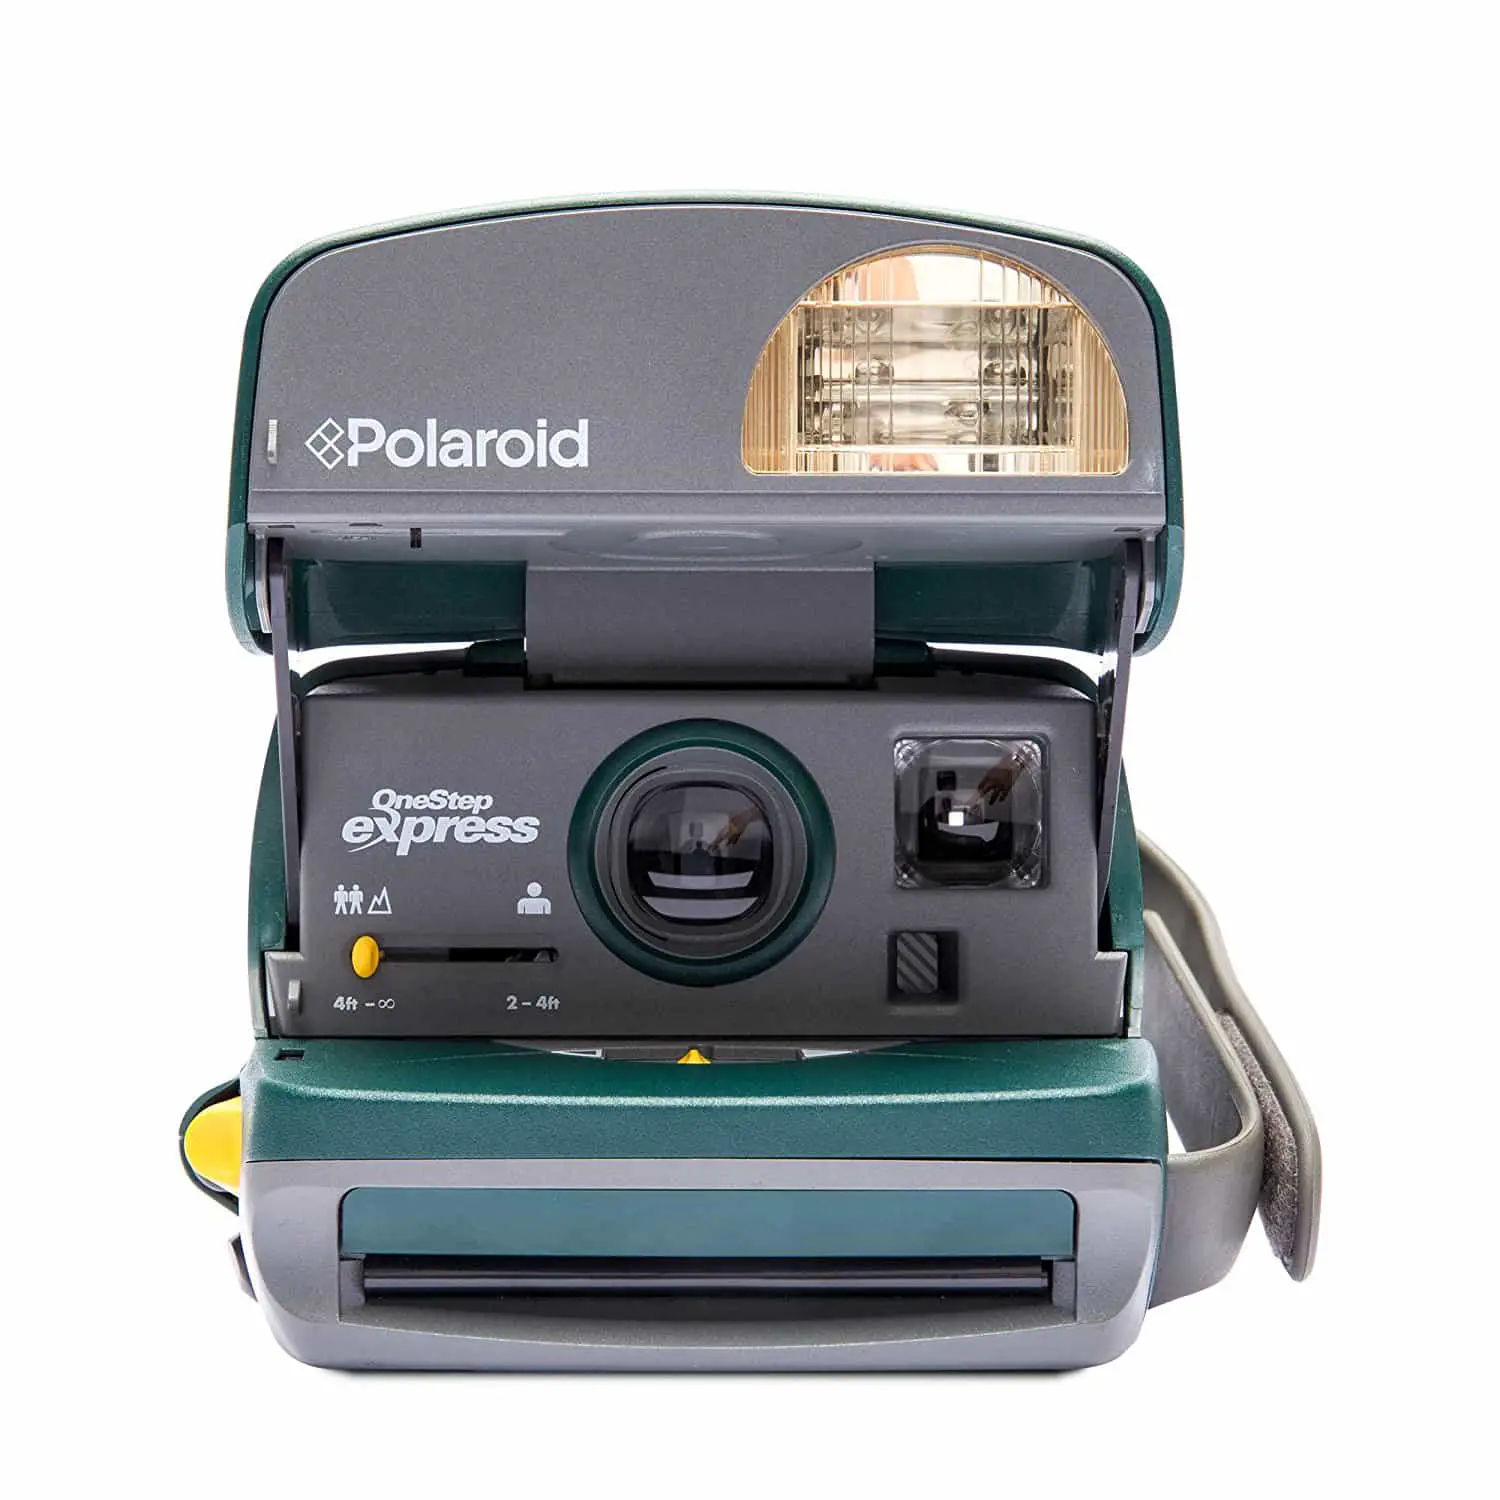 Best Polaroid Instant Camera 2022